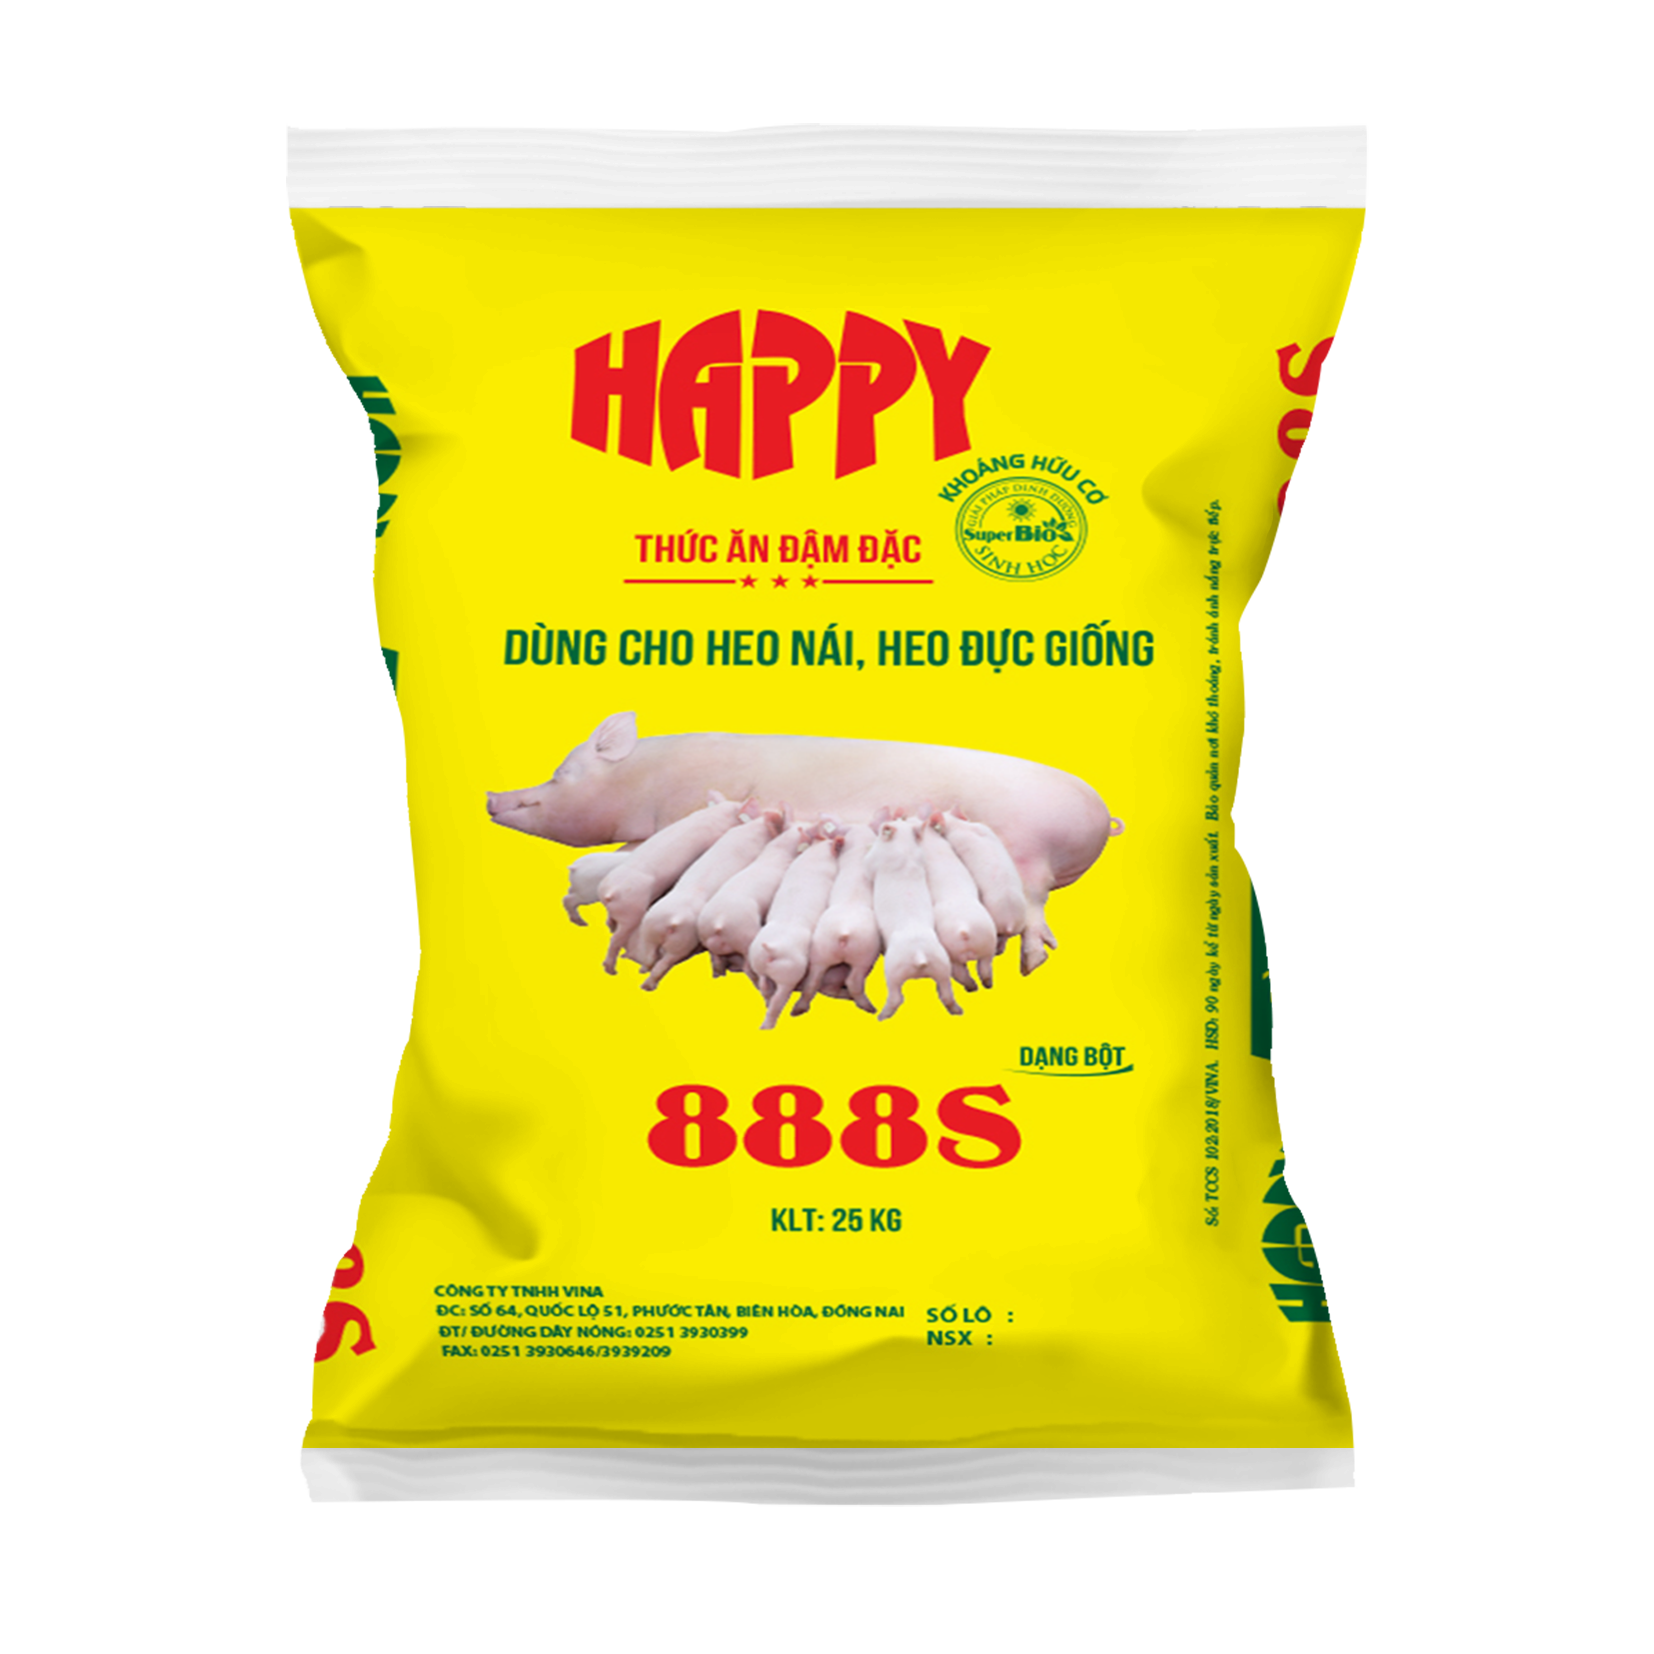 HAPPY 888S